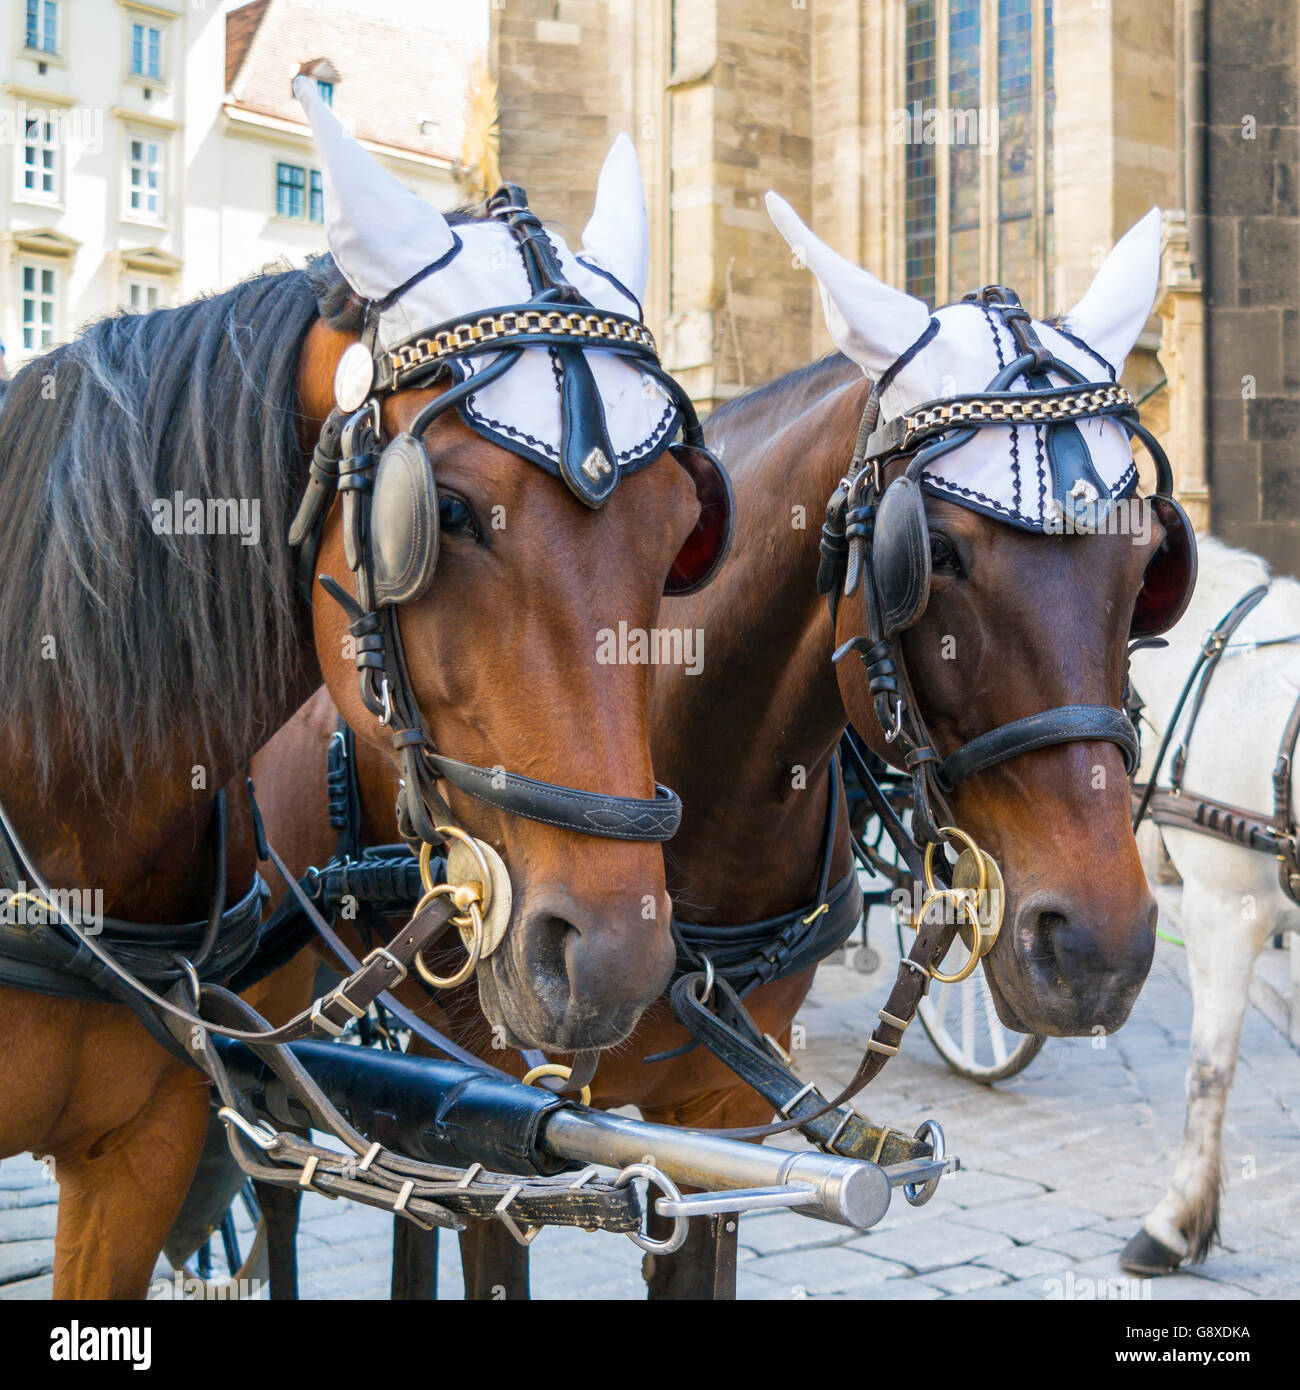 Chefs de deux chevaux sur chariot fiaker brun Stephansplatz au centre-ville de Vienne, Autriche Banque D'Images